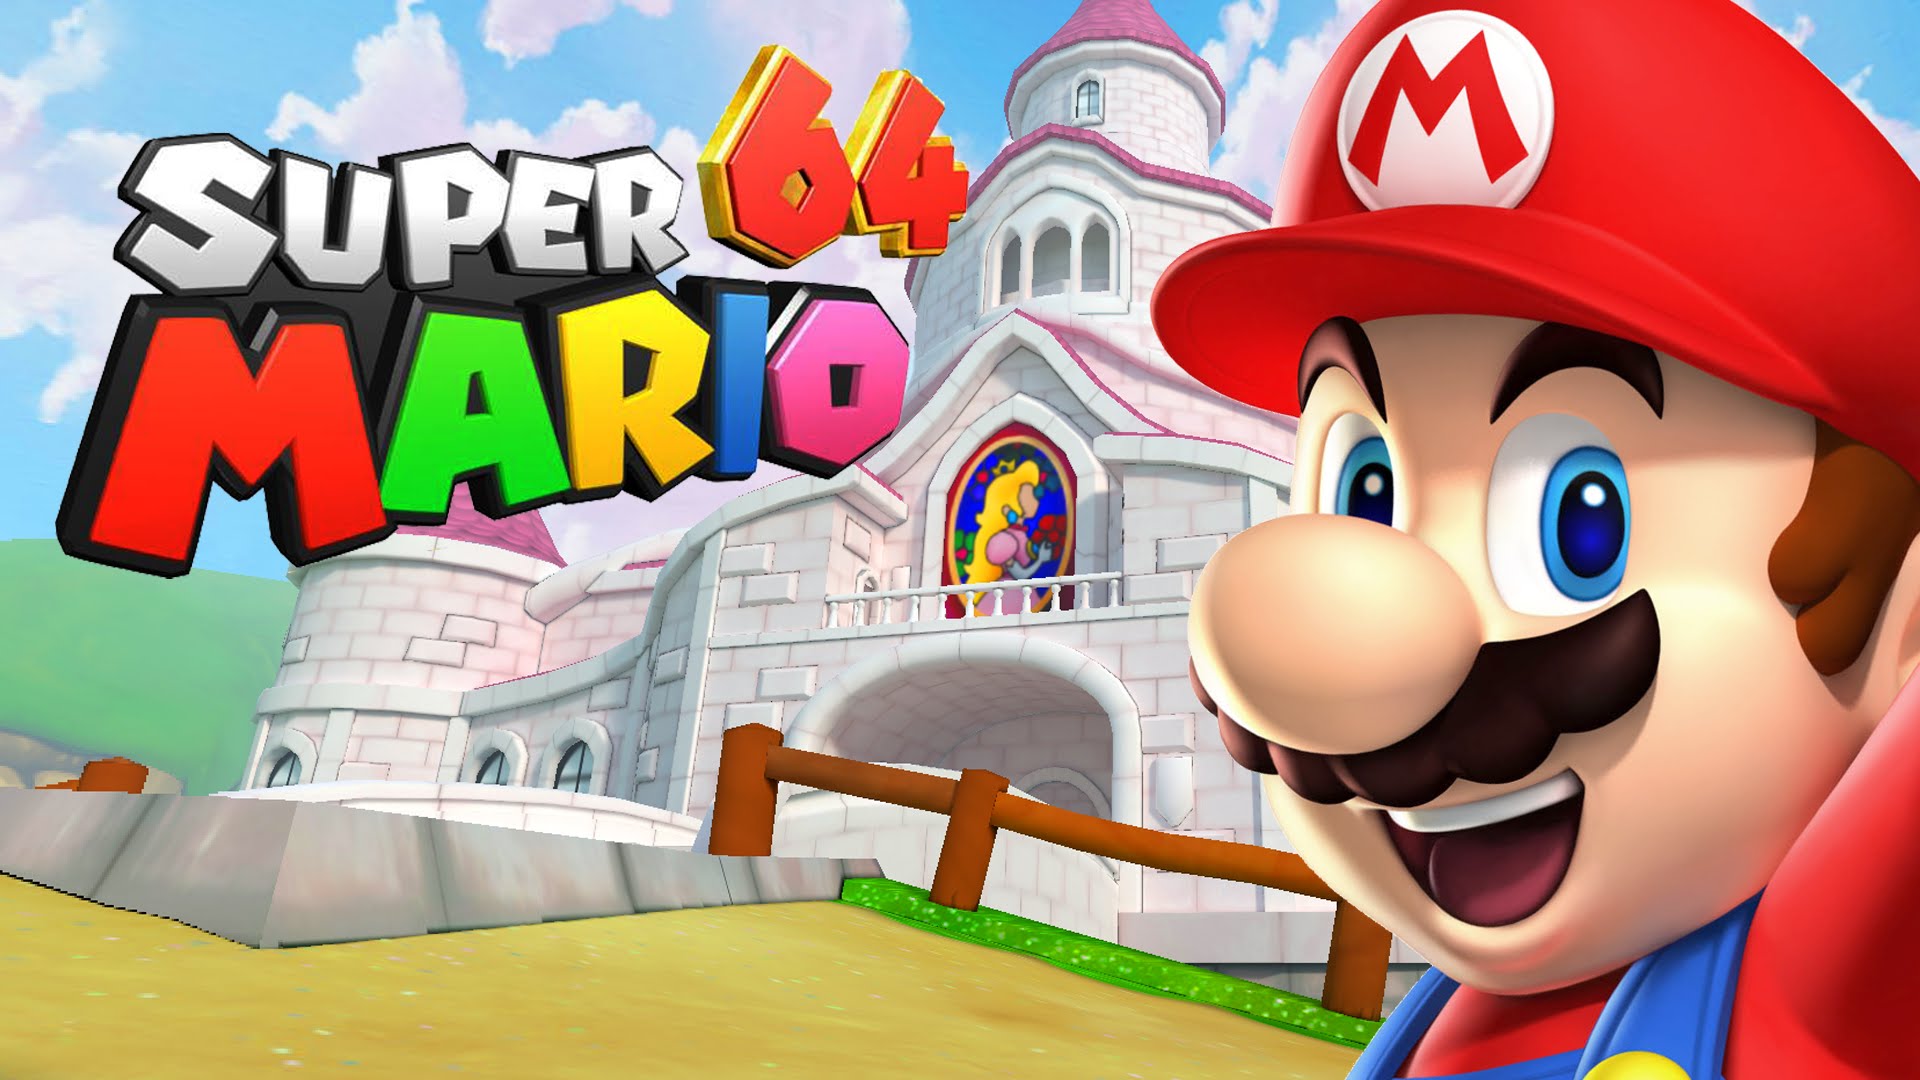 Versi PC asli Super Mario 64 ditampilkan untuk pertama kalinya